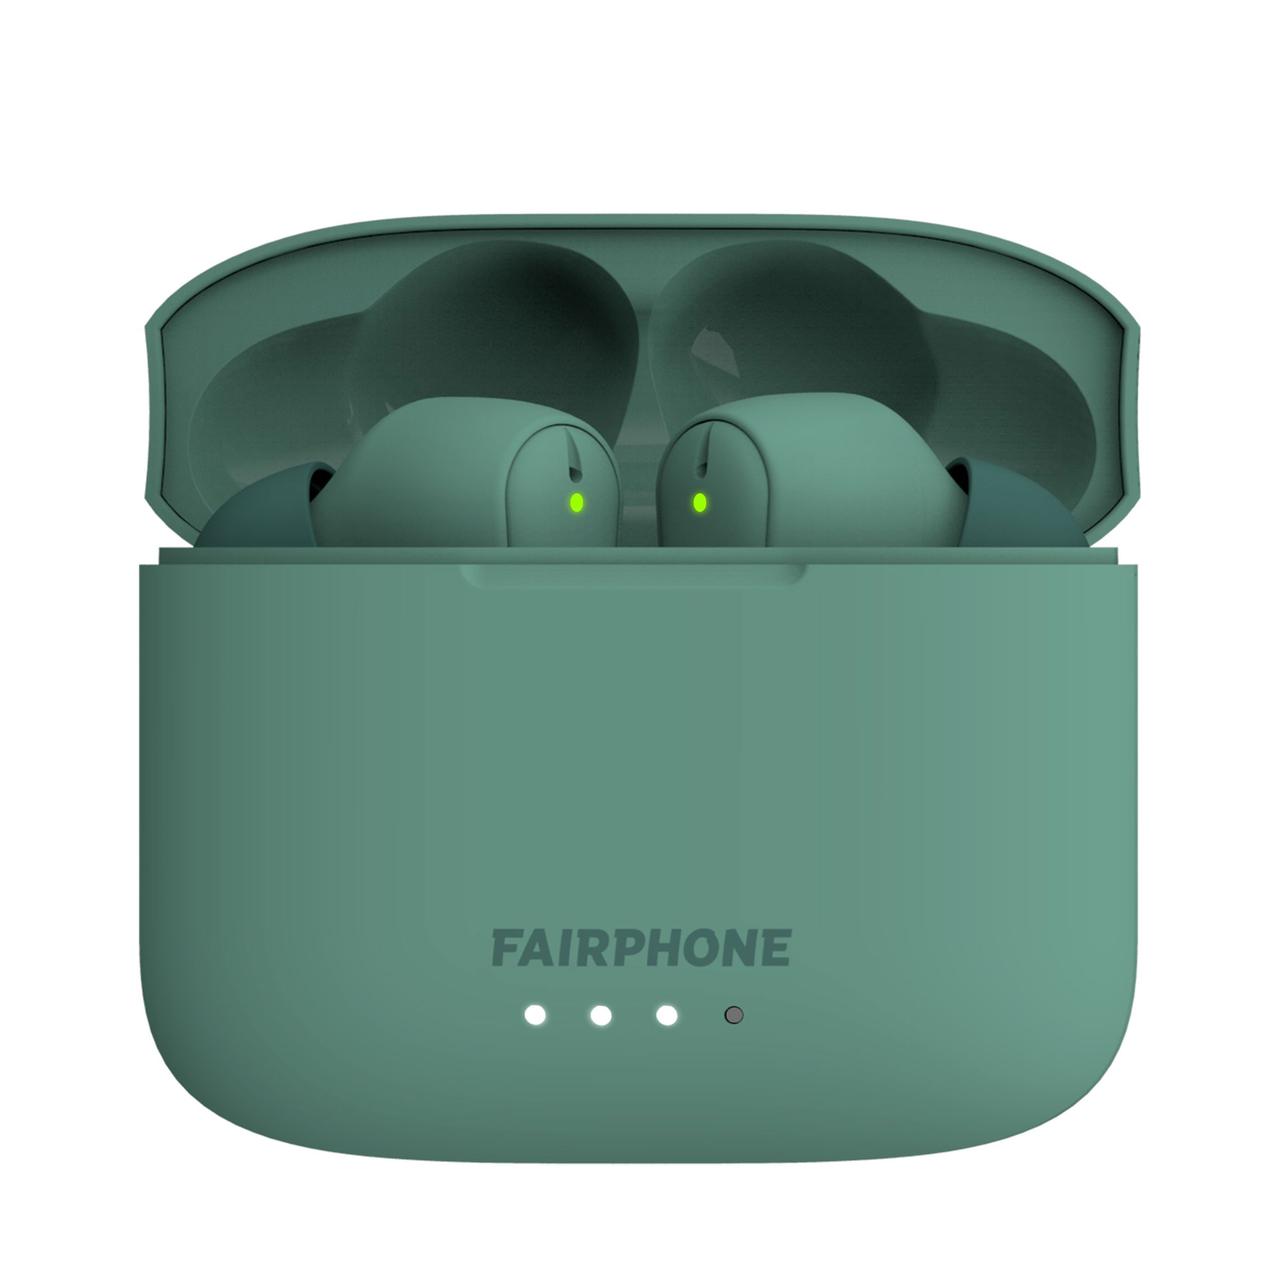 Led-Funktion für Ladestand und Verbindungsmodus, Bluetooth-Kopfhörer in Ladebox, Fairphone, grün